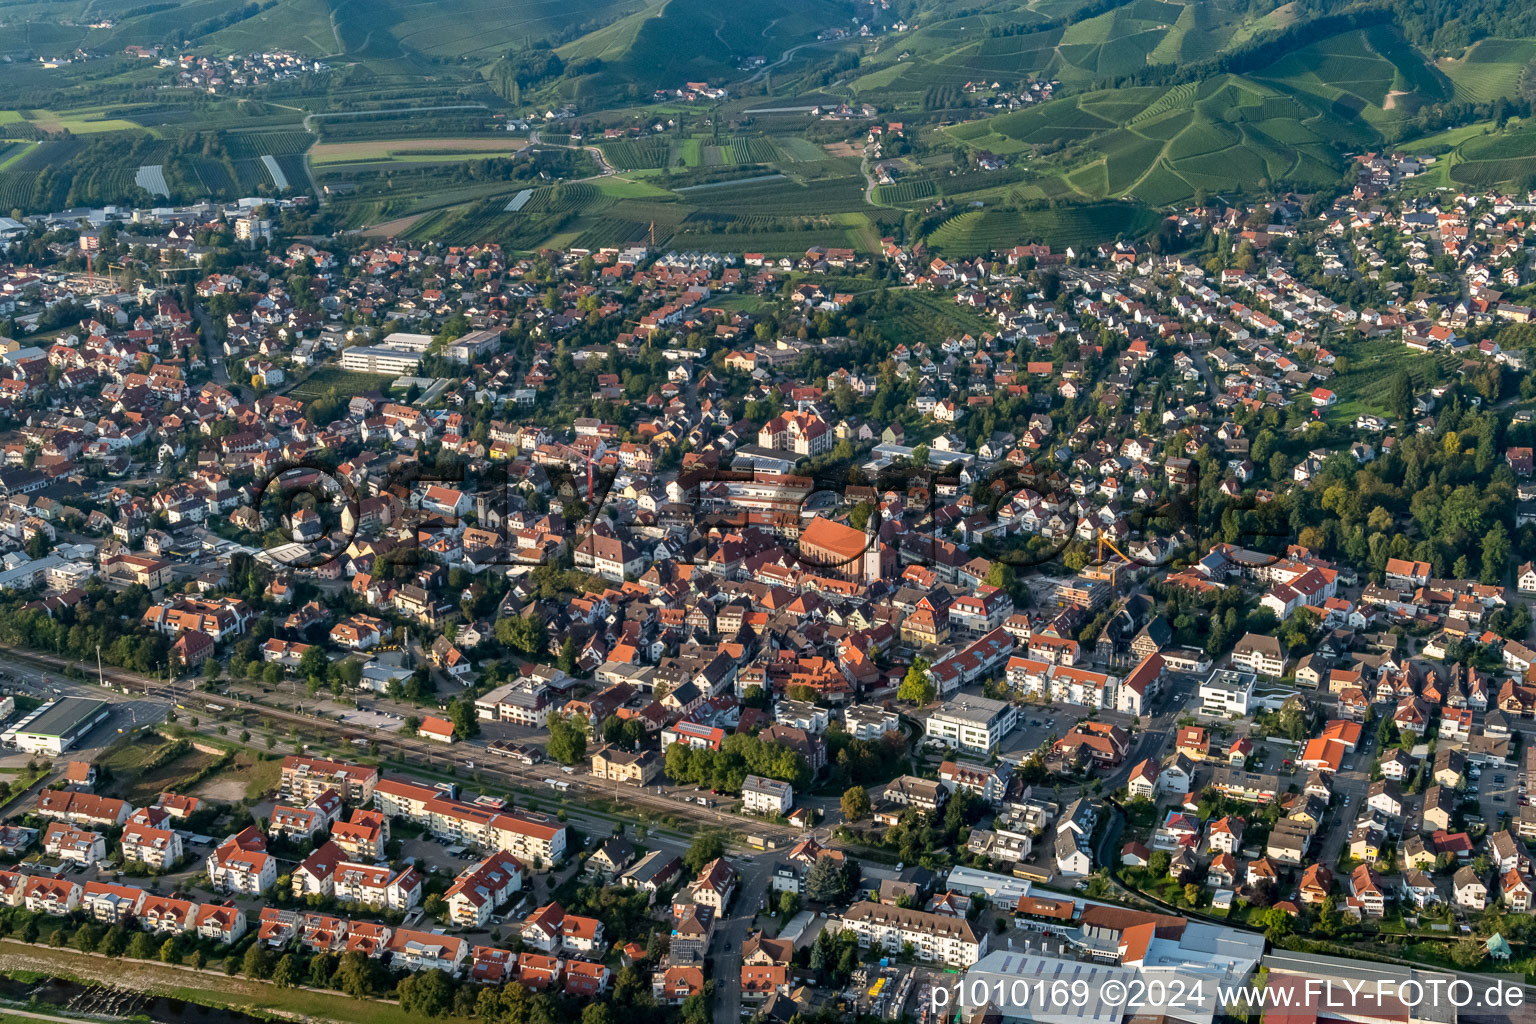 Luftbild von Ortsansicht der Straßen und Häuser der Wohngebiete in Oberkirch im Ortsteil Gaisbach im Bundesland Baden-Württemberg, Deutschland